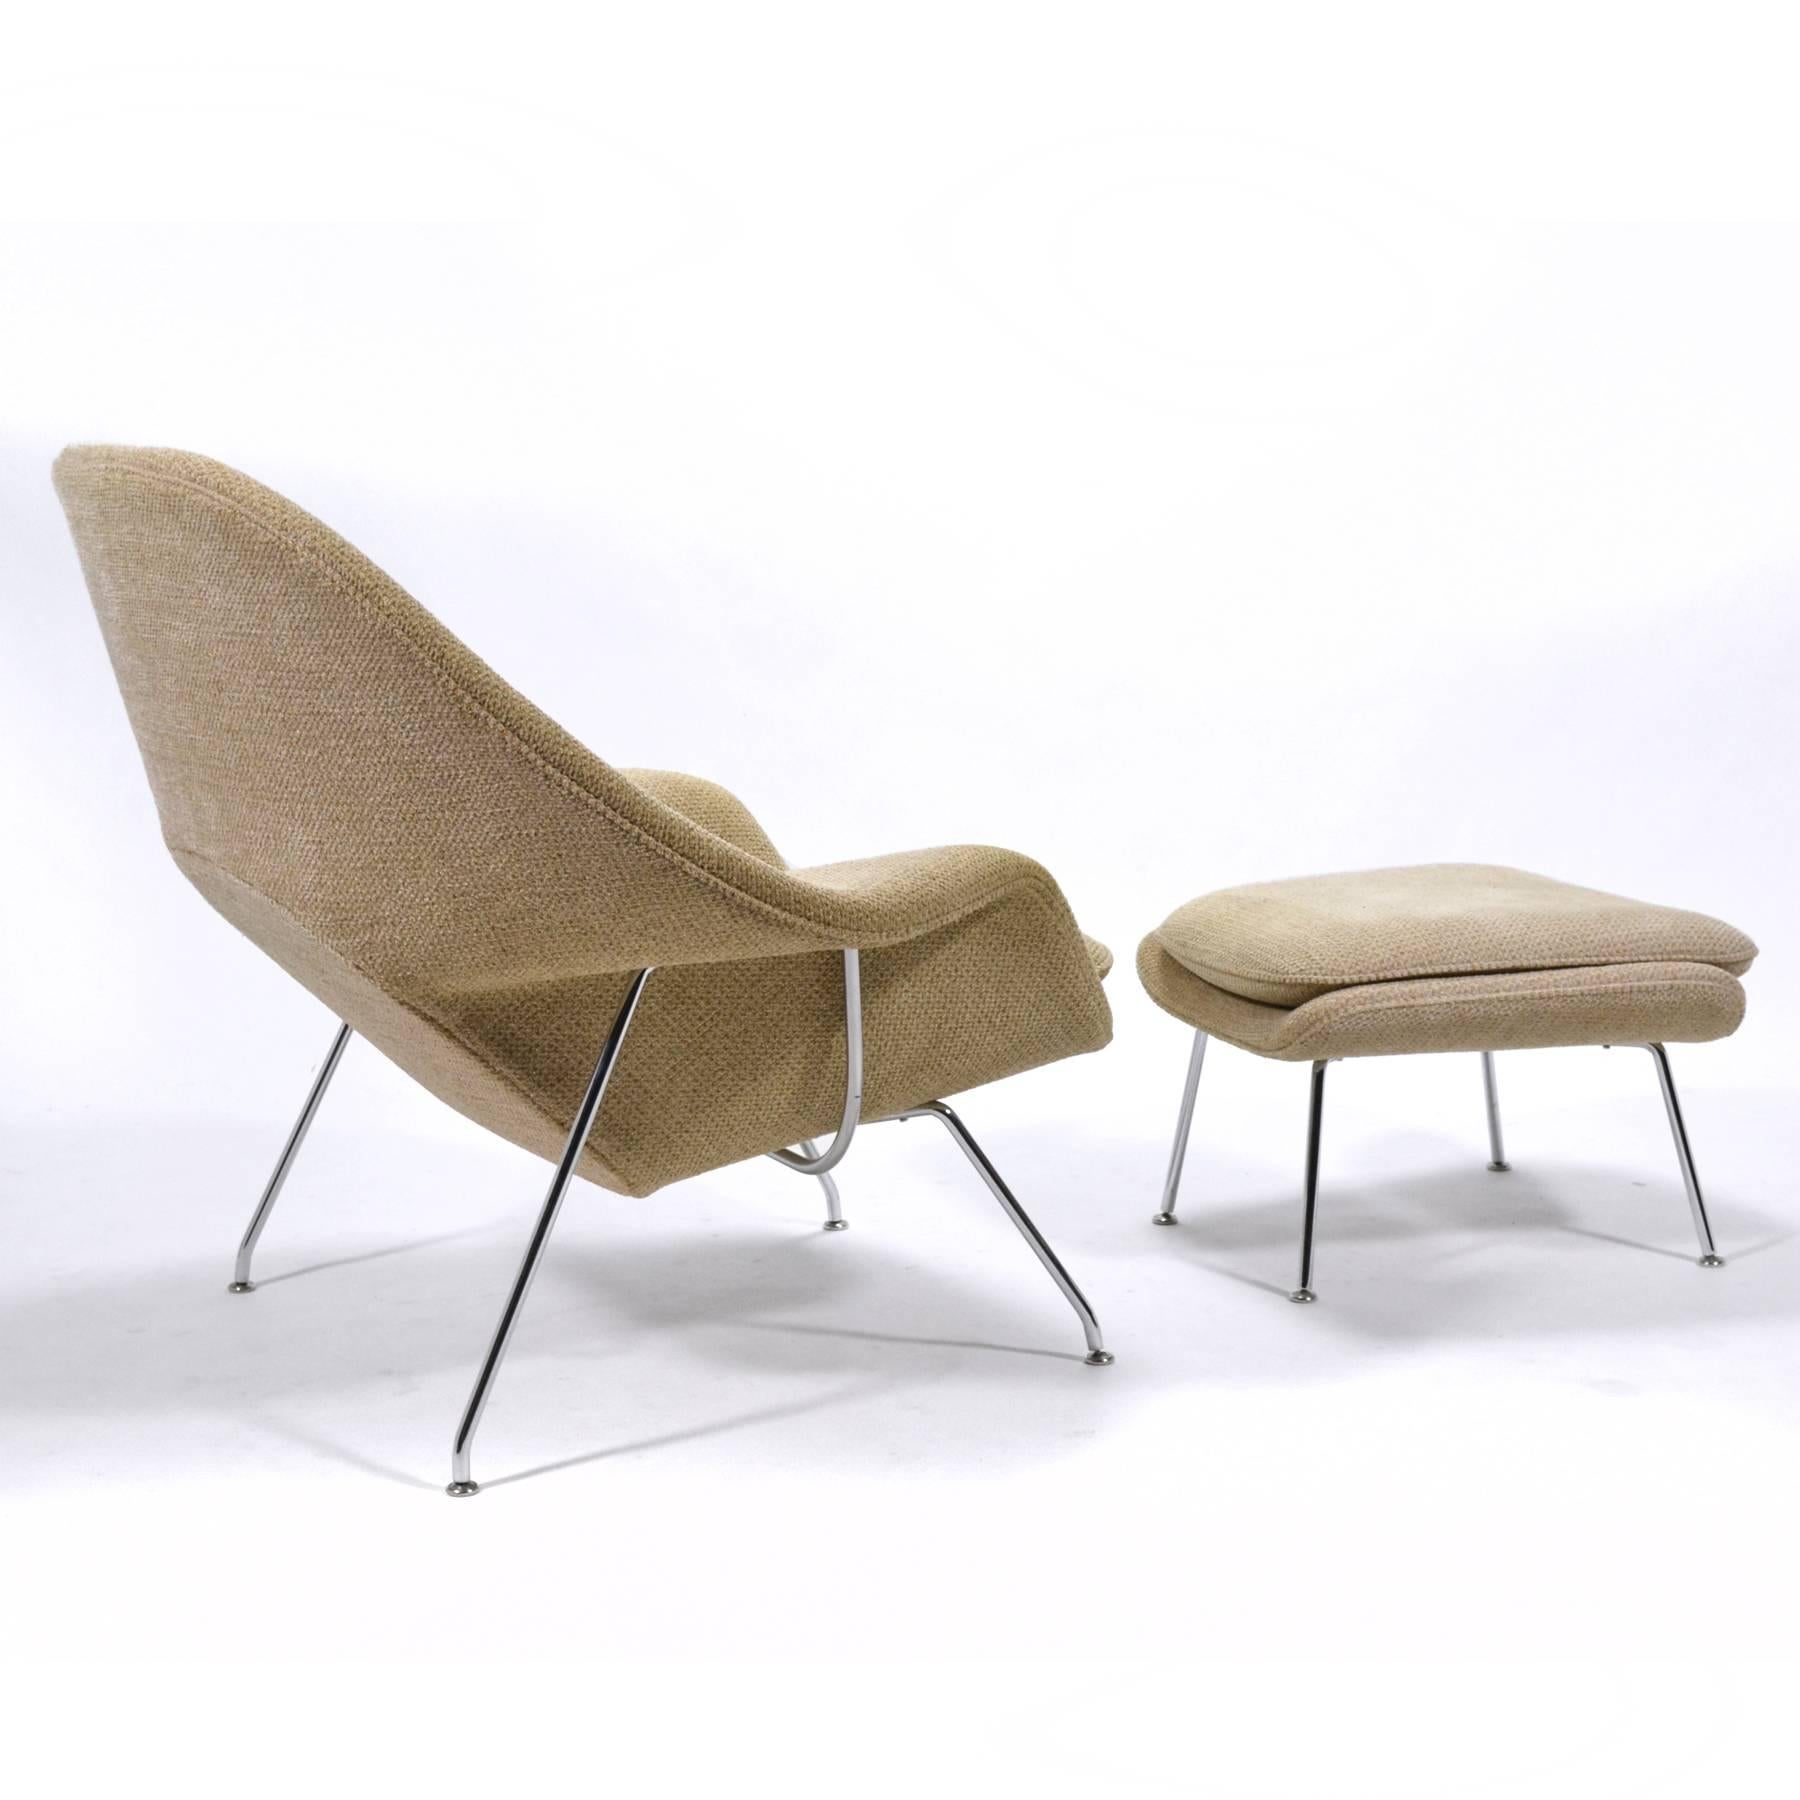 Steel Eero Saarinen Womb Chair and Ottoman by Knoll